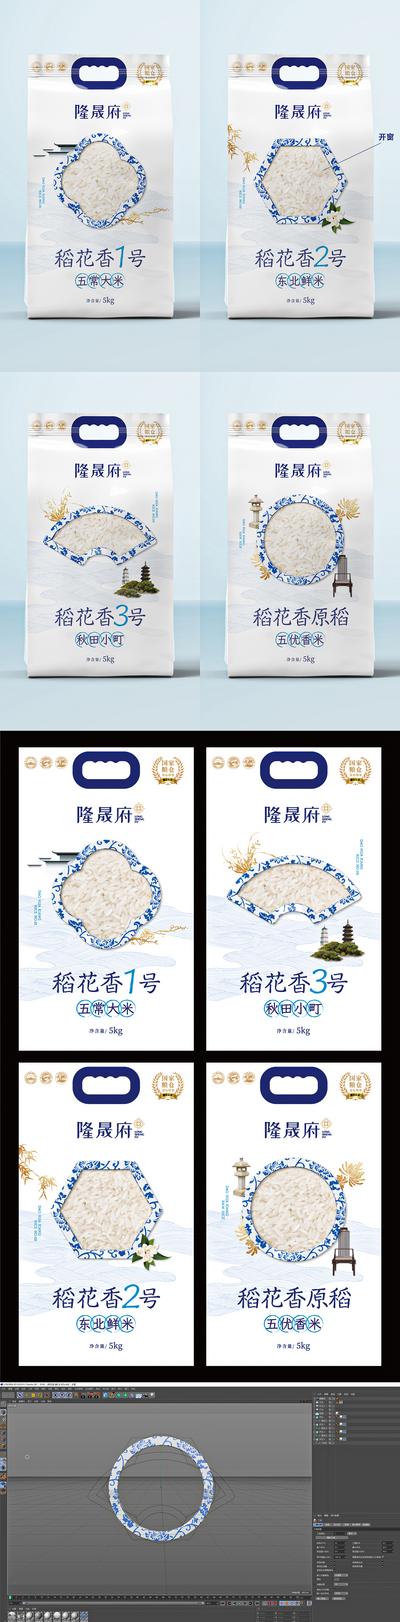 【南门网】效果图 样机 原创 包装 中式 中国风 创意 系列 青花瓷 粮食 稻米 五常 大米 边框 简约